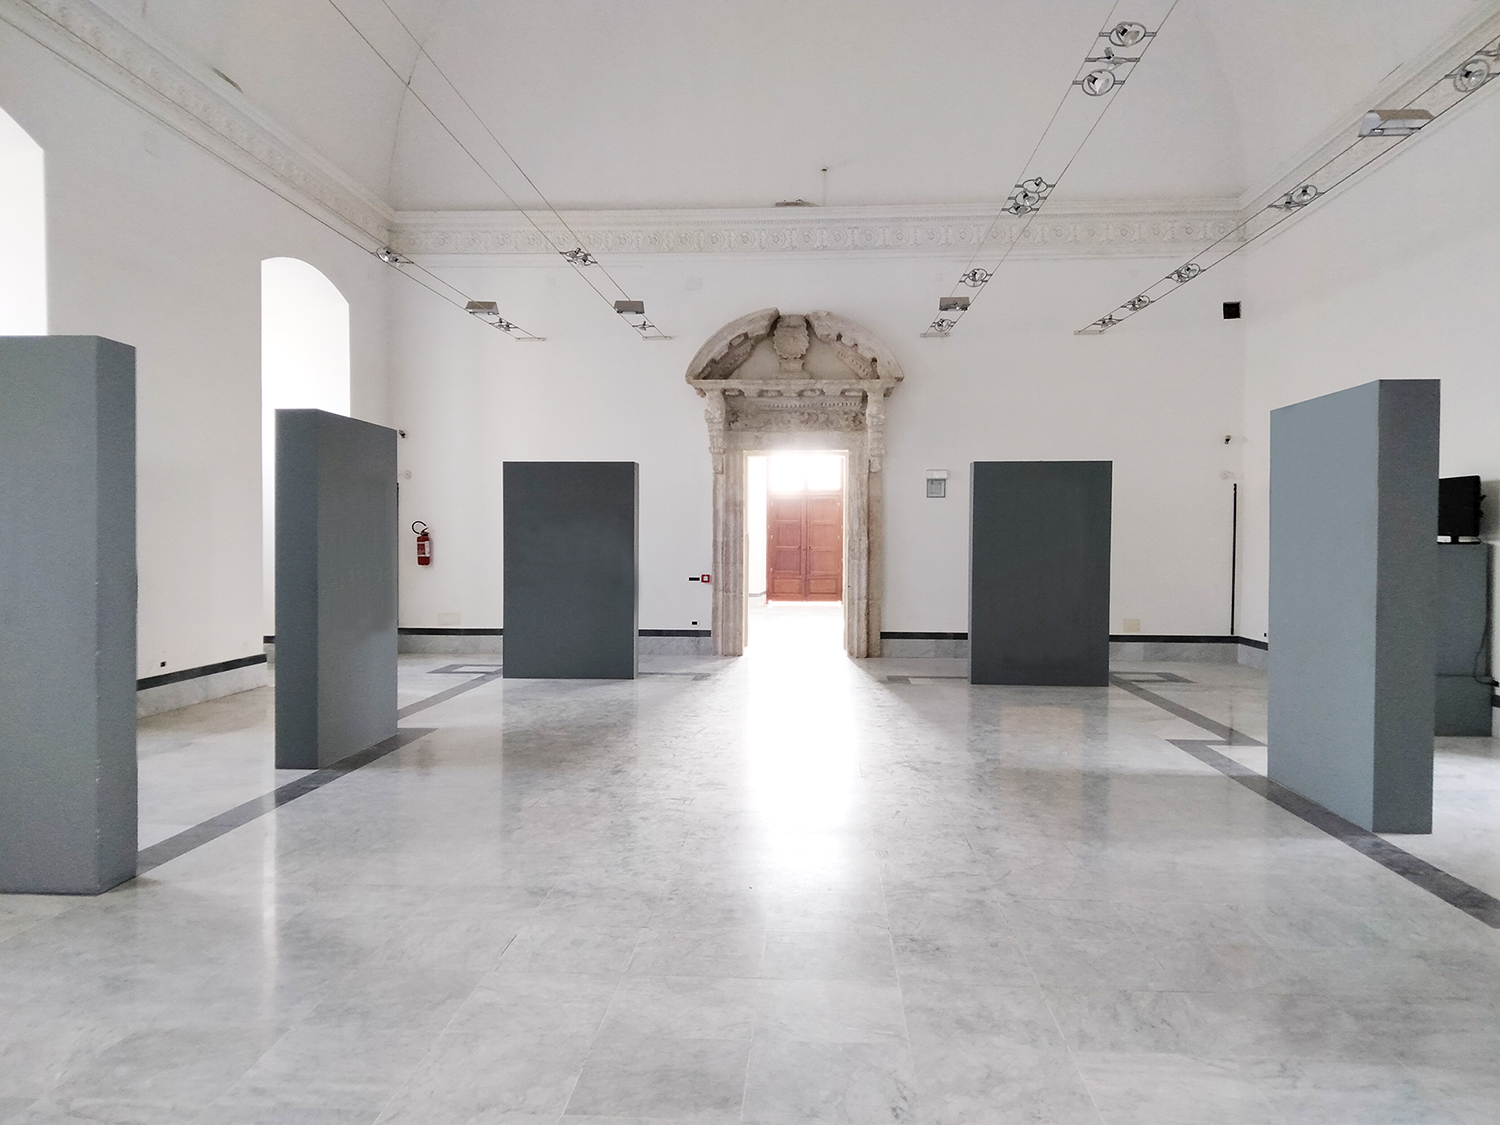 Caltanissetta: libri-opere in mostra al Palazzo Moncada: sabato si inaugura “Nuovi corpi nuove forme”